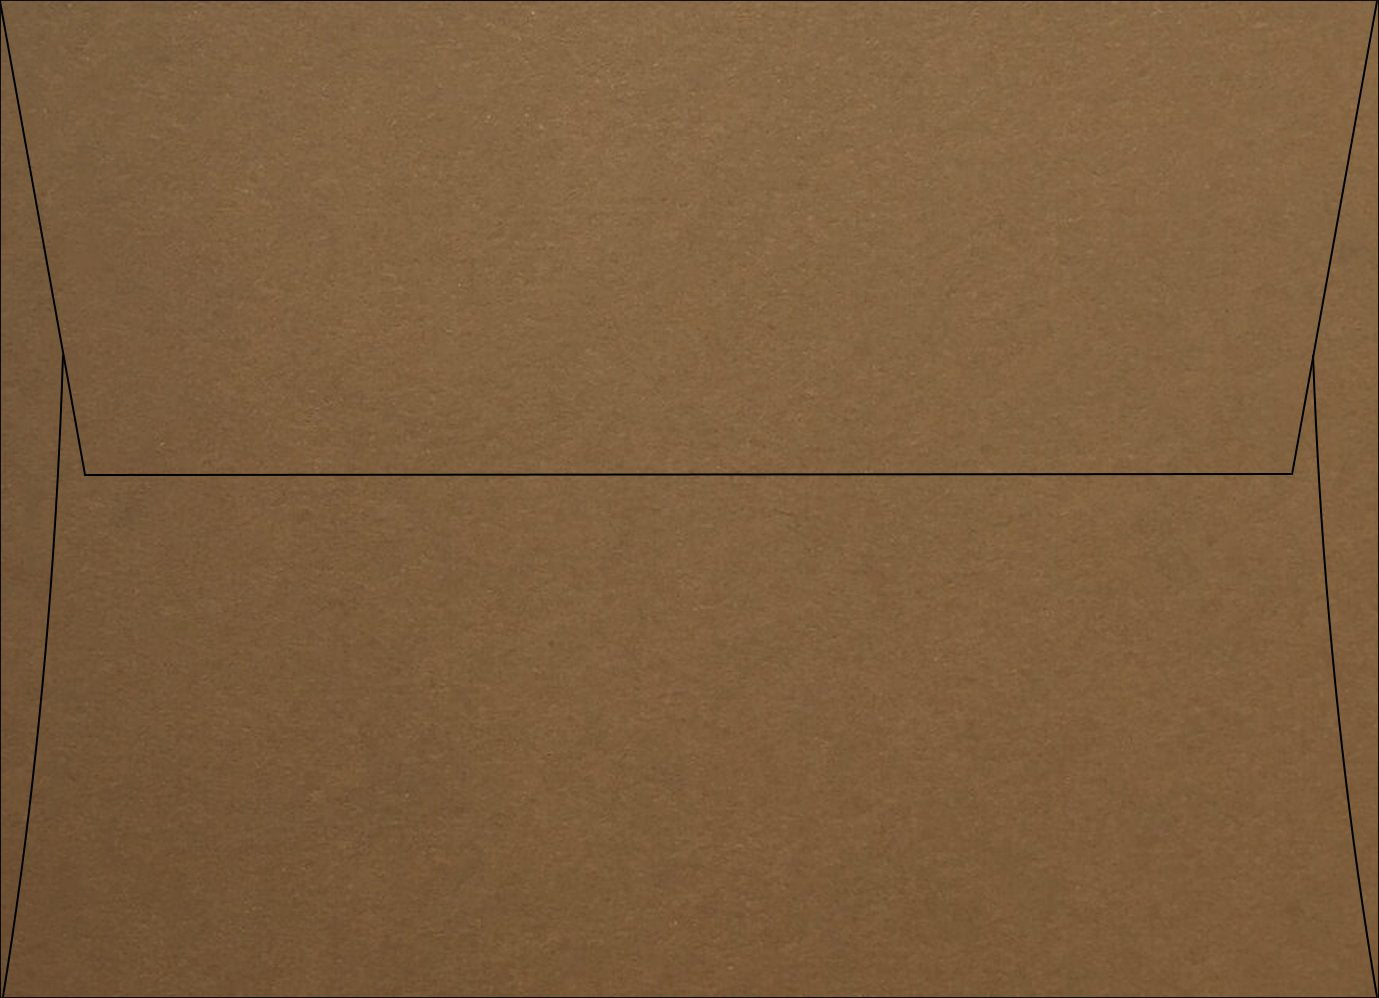 Brown Speckletone Square Flap Envelopes